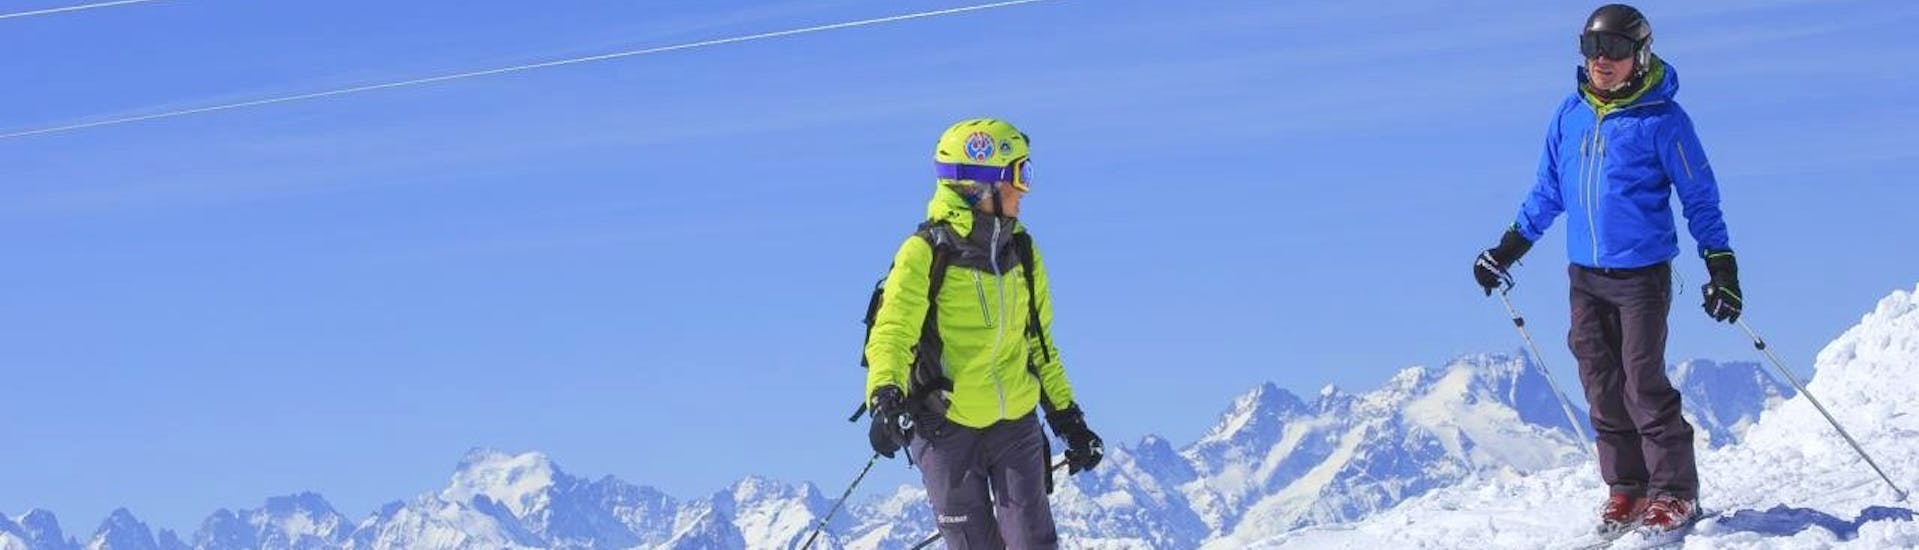 Privater Ski-Kurs für Erwachsene aller Levels.